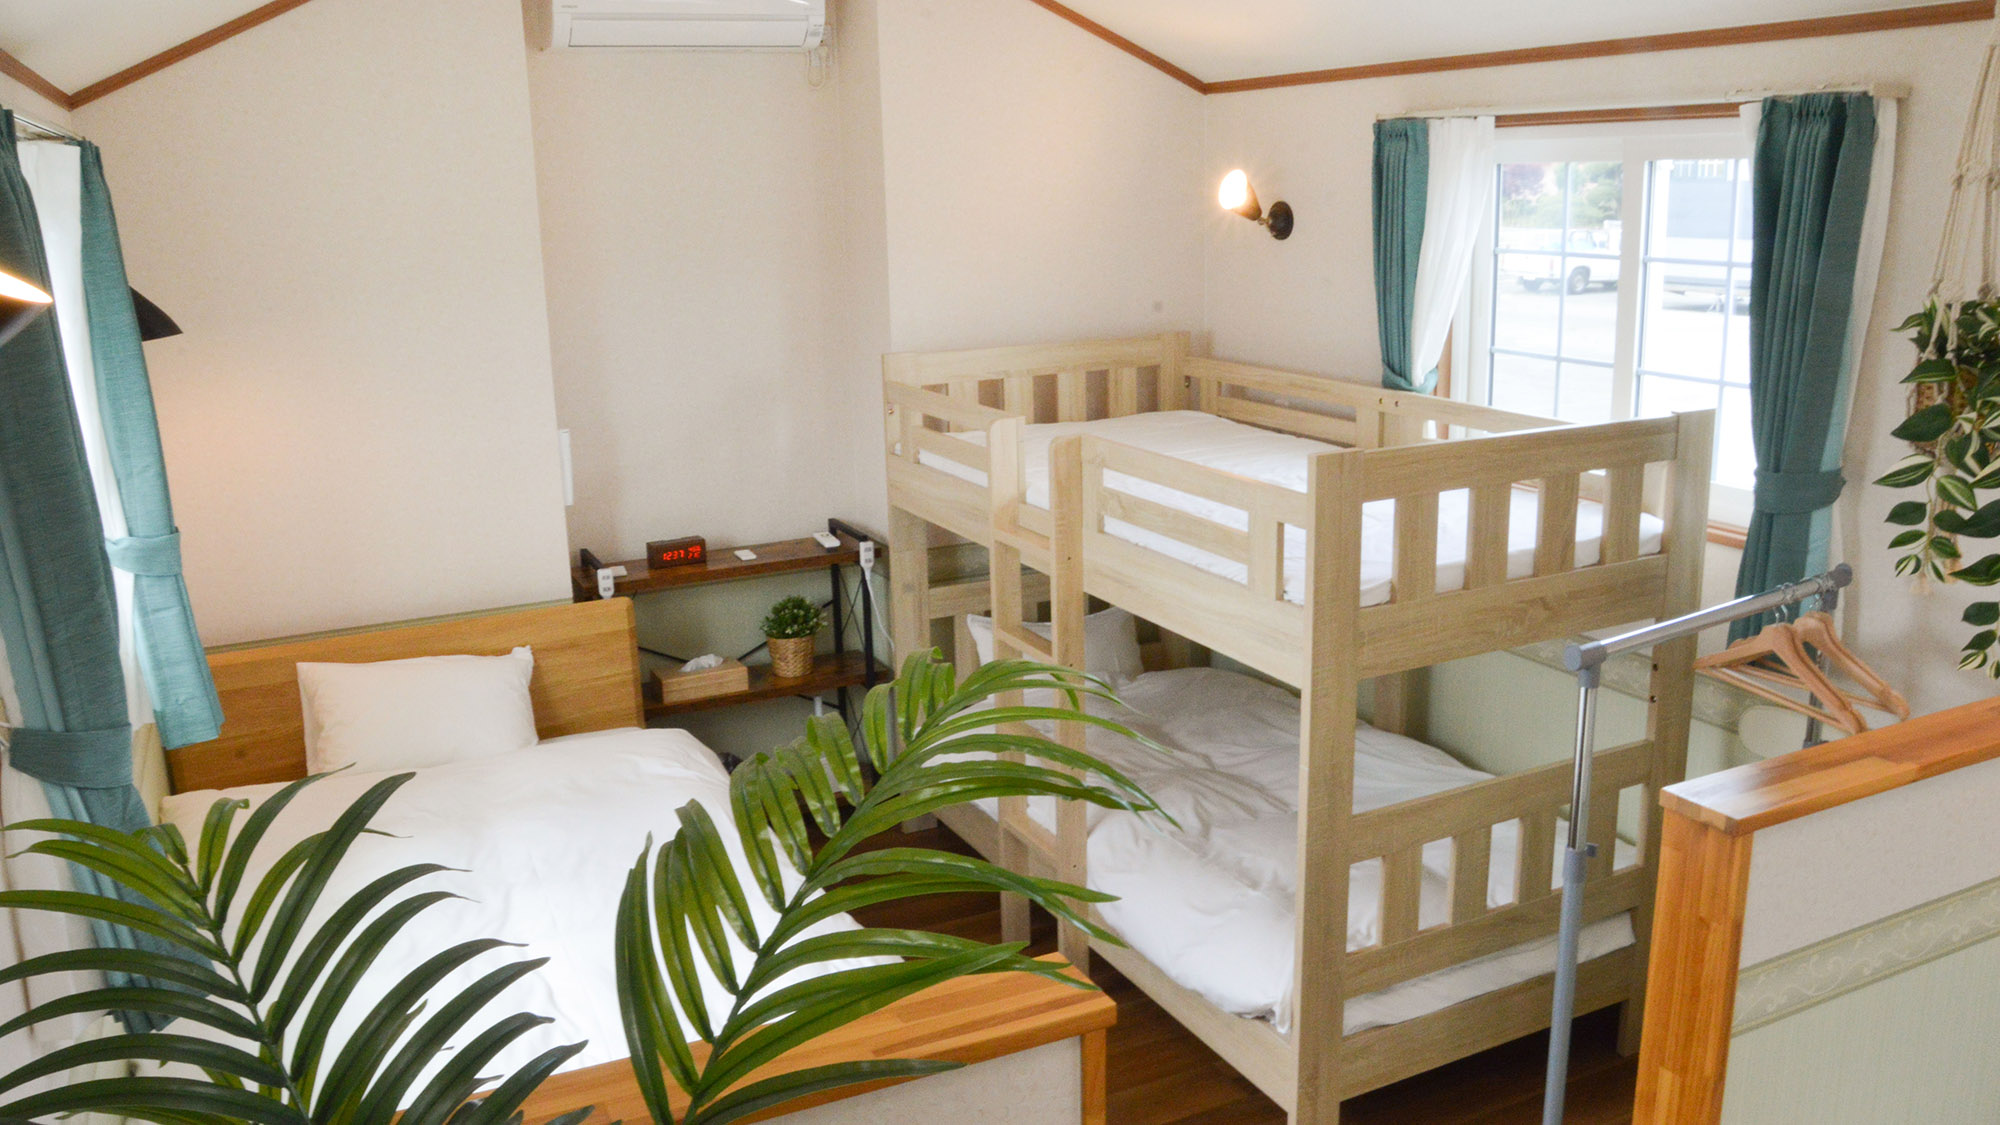 ・【GREEN Cabin】2段ベッドとセミダブルベッドの寝室。エアコン完備で温度調節も楽チン